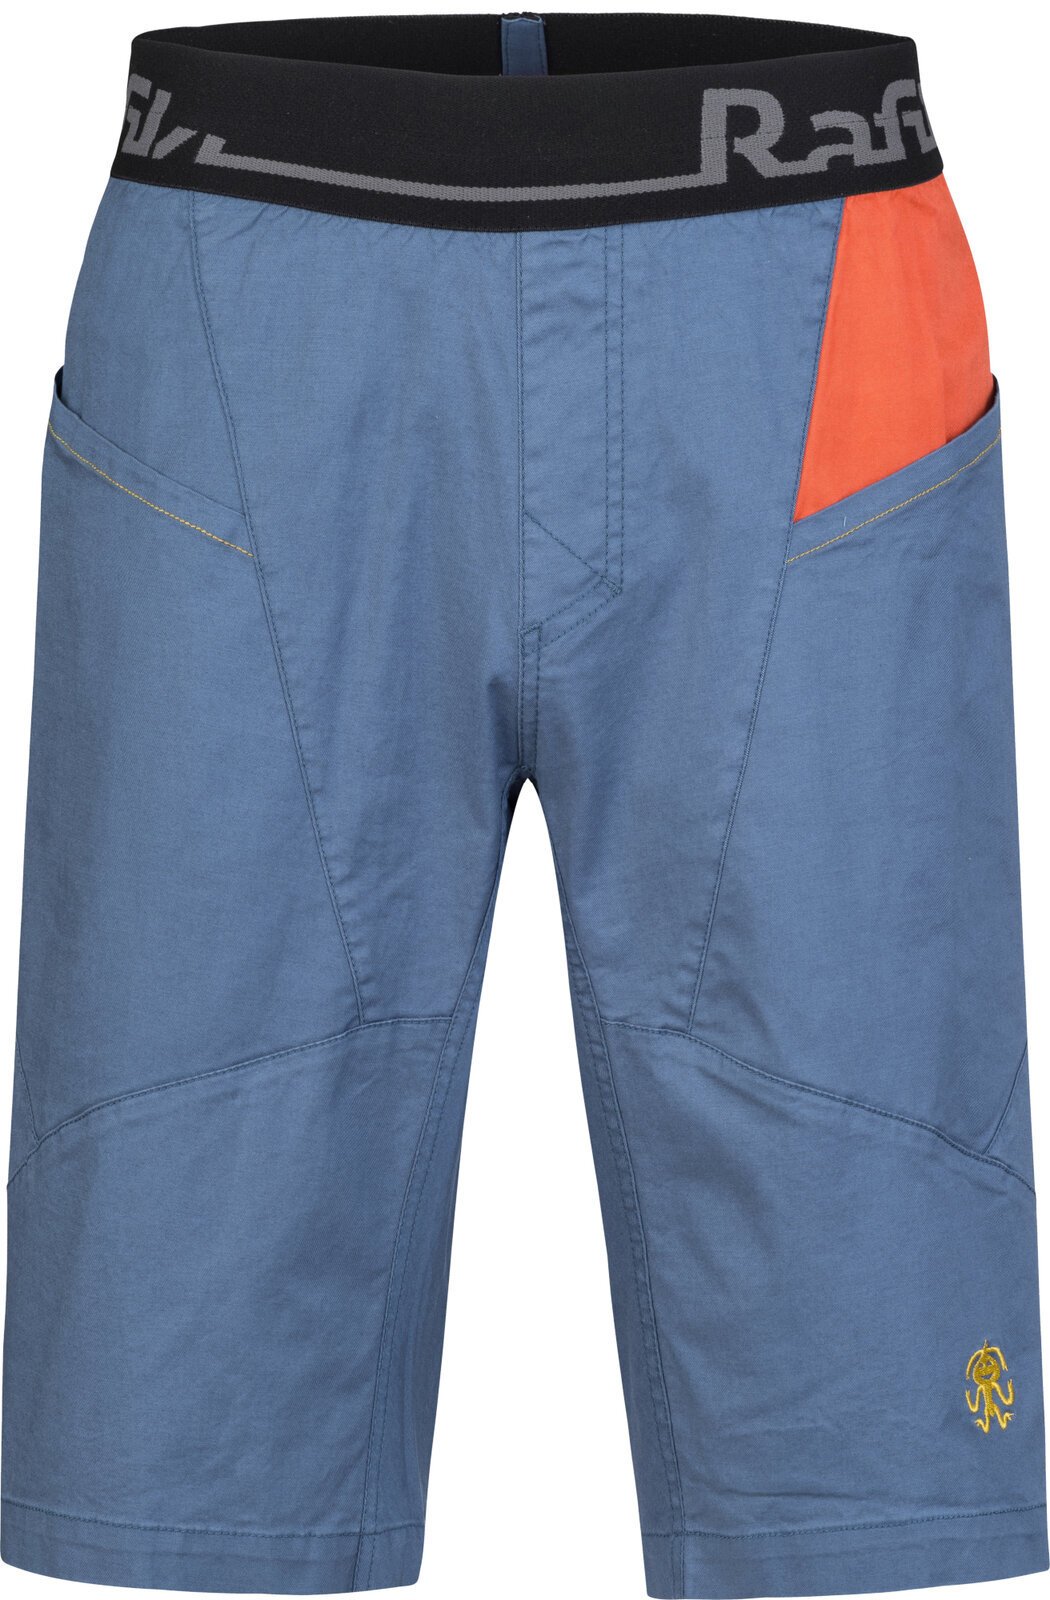 Shorts outdoor Rafiki Megos Man Shorts Ensign Blue/Clay XS Shorts outdoor